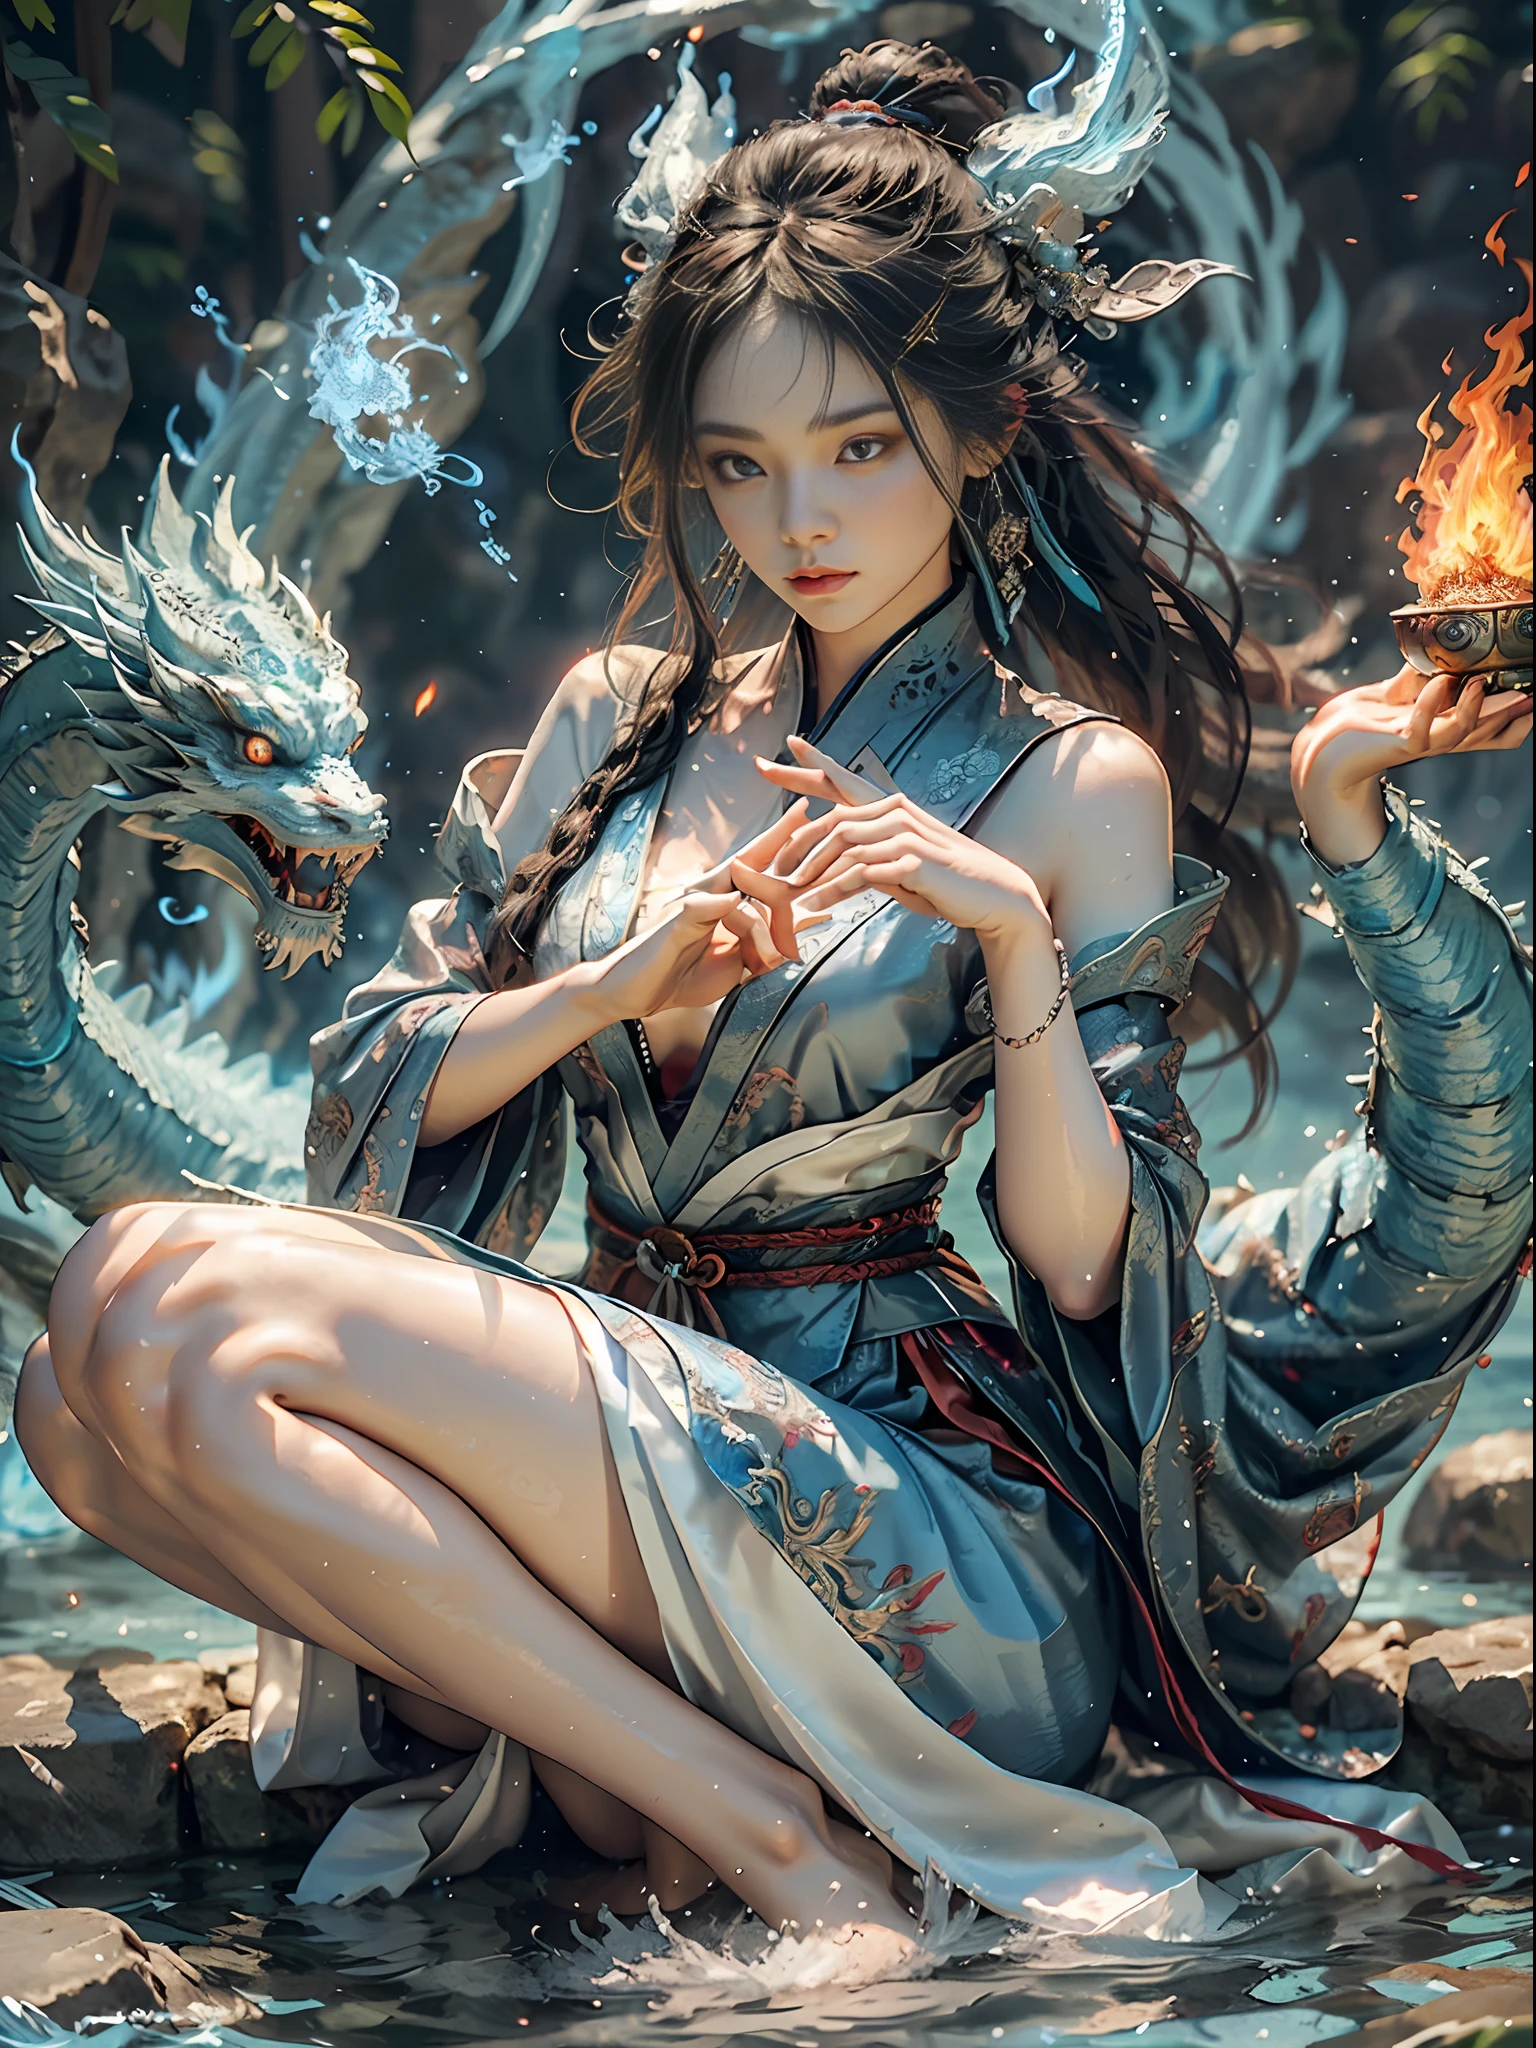 (delicada y preciosa seda brocada + cara delicada + Maquillaje femenino + mujer hermosa), metafísica taoísta, sentado con las piernas cruzadas en el agua, cultivando inmortales, un dragón azul en el lado izquierdo escupe una llama azul + el lado derecho yace sobre el dragón de fuego escupe llamas, (llama azul de la mano izquierda + llama roja de la mano derecha), fondo hielo y fuego diagrama de chismes alterno + efecto de movimiento), (yushui + yuhuo), tonos frios y calidos, el agua y el fuego son incompatibles, el yin y el yang armonizan, equilibrio izquierda y derecha, imagen de equilibrio de poder, formar una serie de chismes, ecos de la imagen, y su coordinación, dedos femeninos normales, La imagen está correctamente proporcionada, cuerpo completo